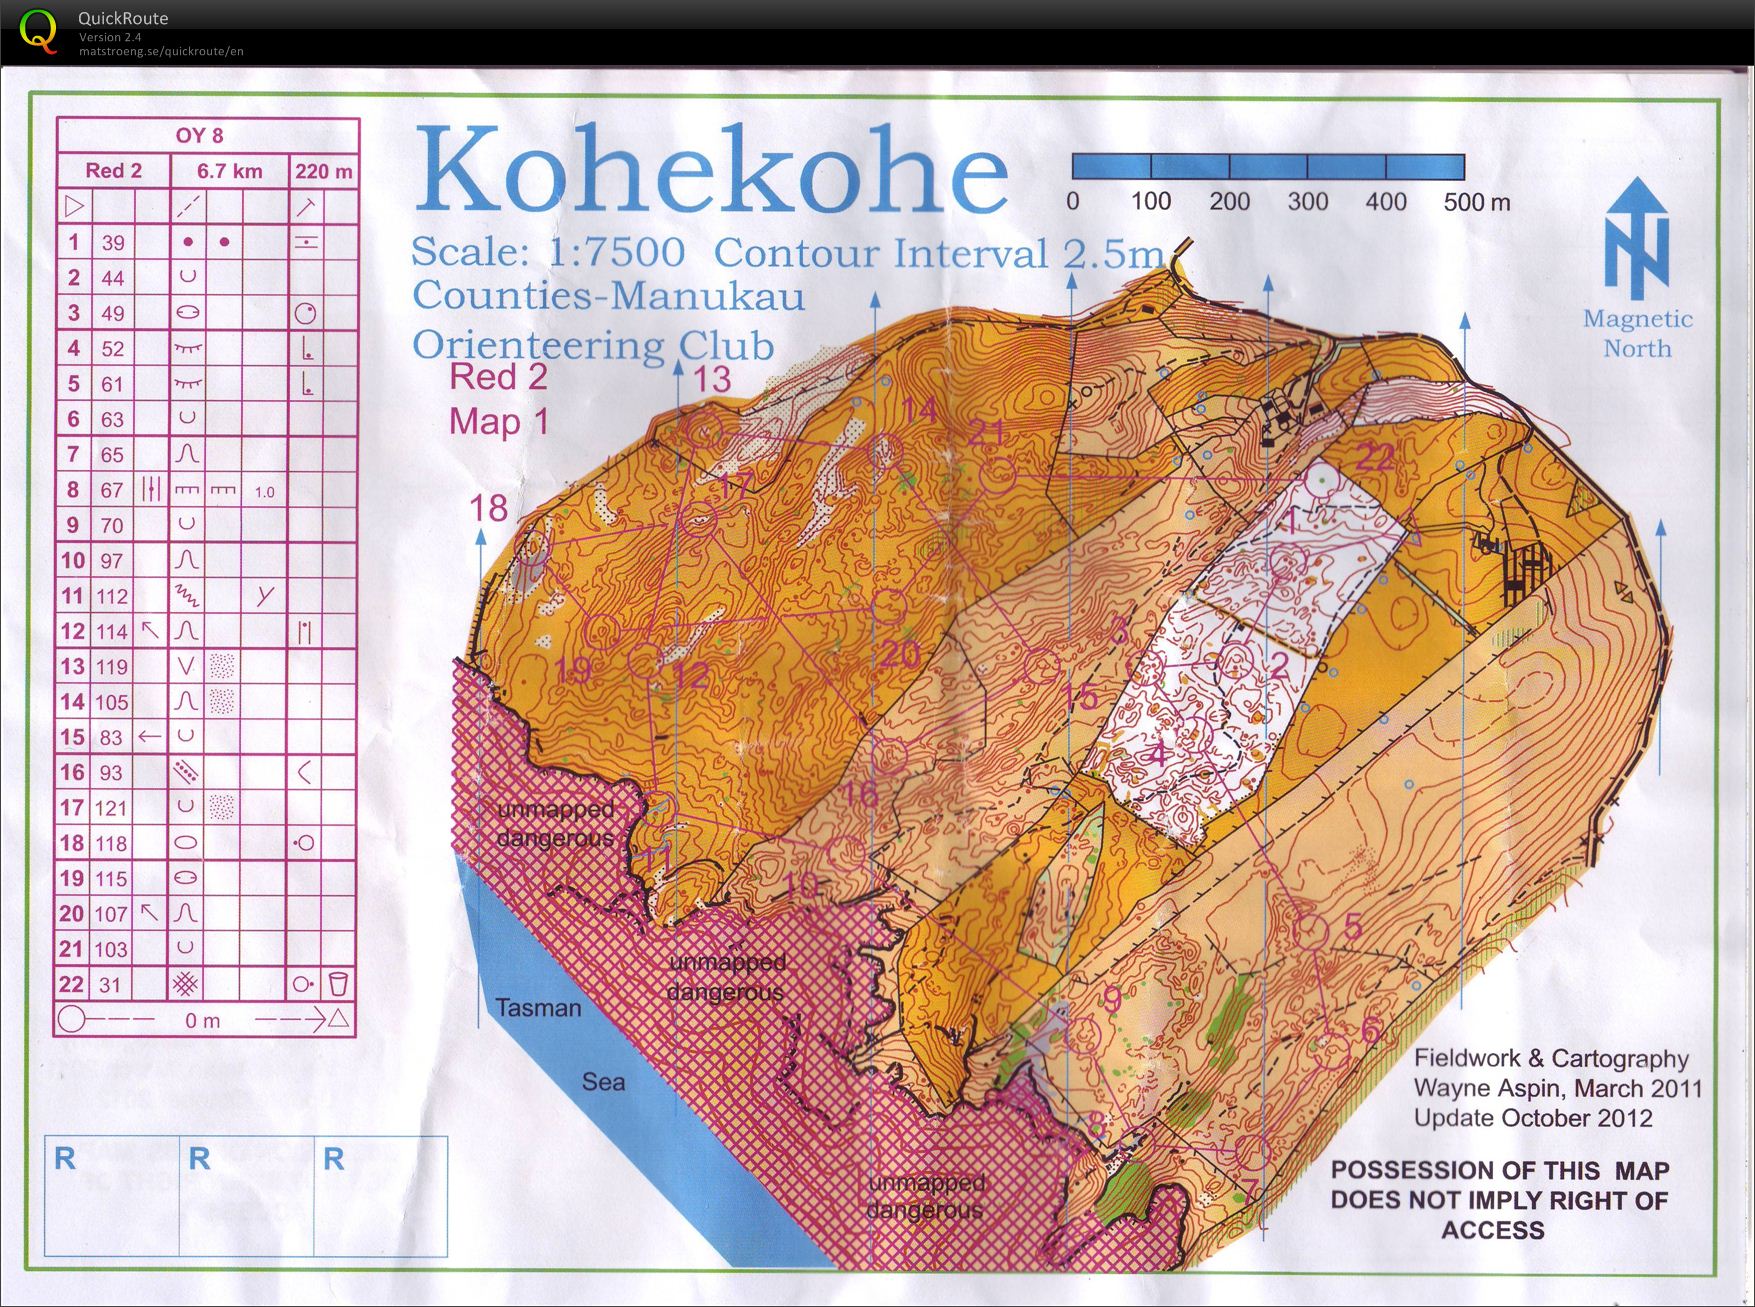 OY8 Kohekohe (2012-10-27)